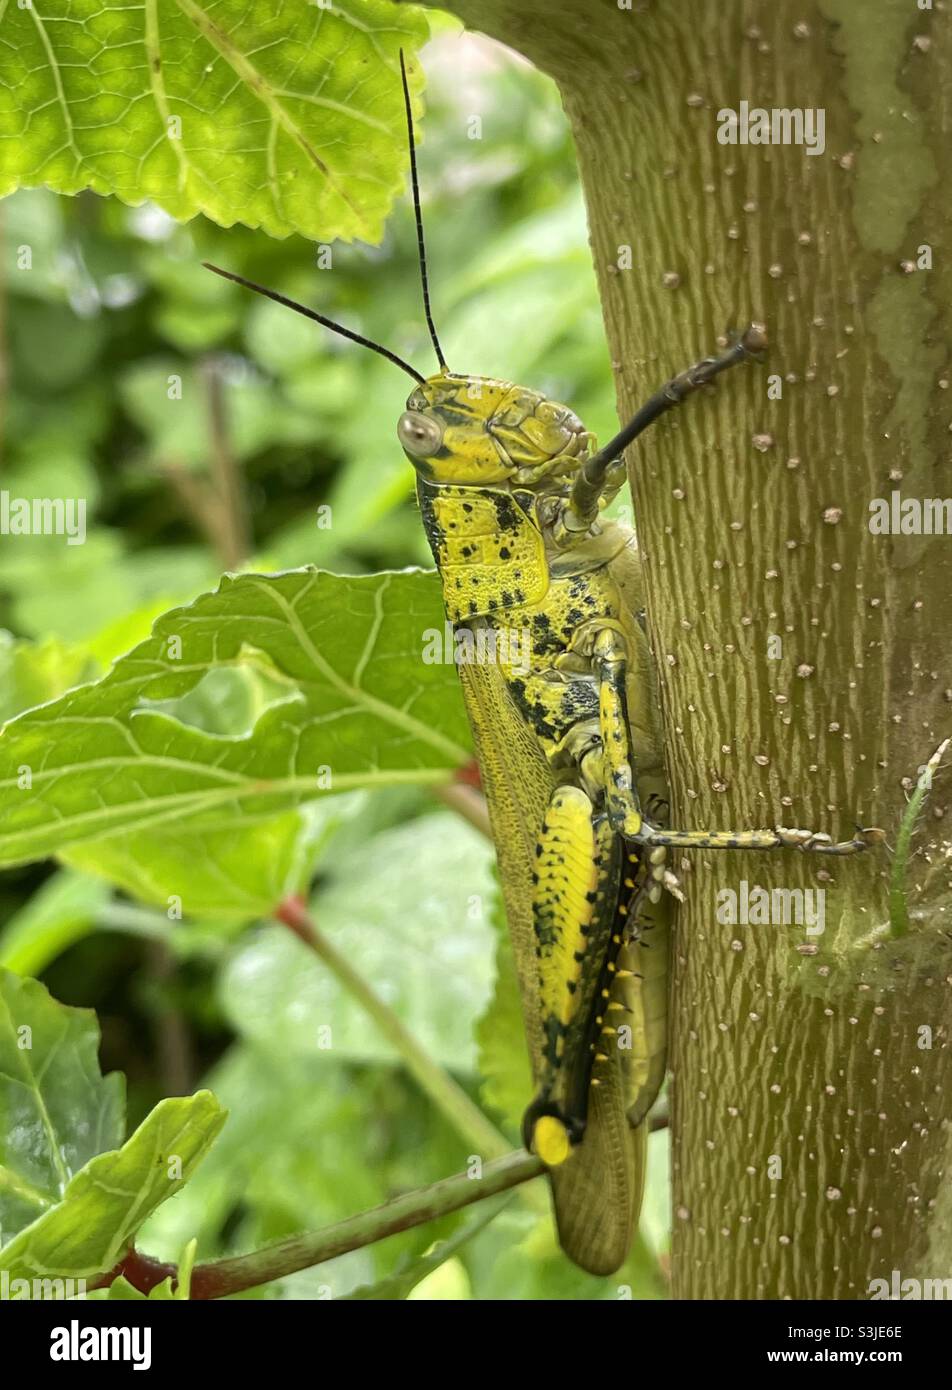 Eine javanische Heuschrecke griff auf den Stamm der Okra-Pflanze in Malaysia. Stockfoto